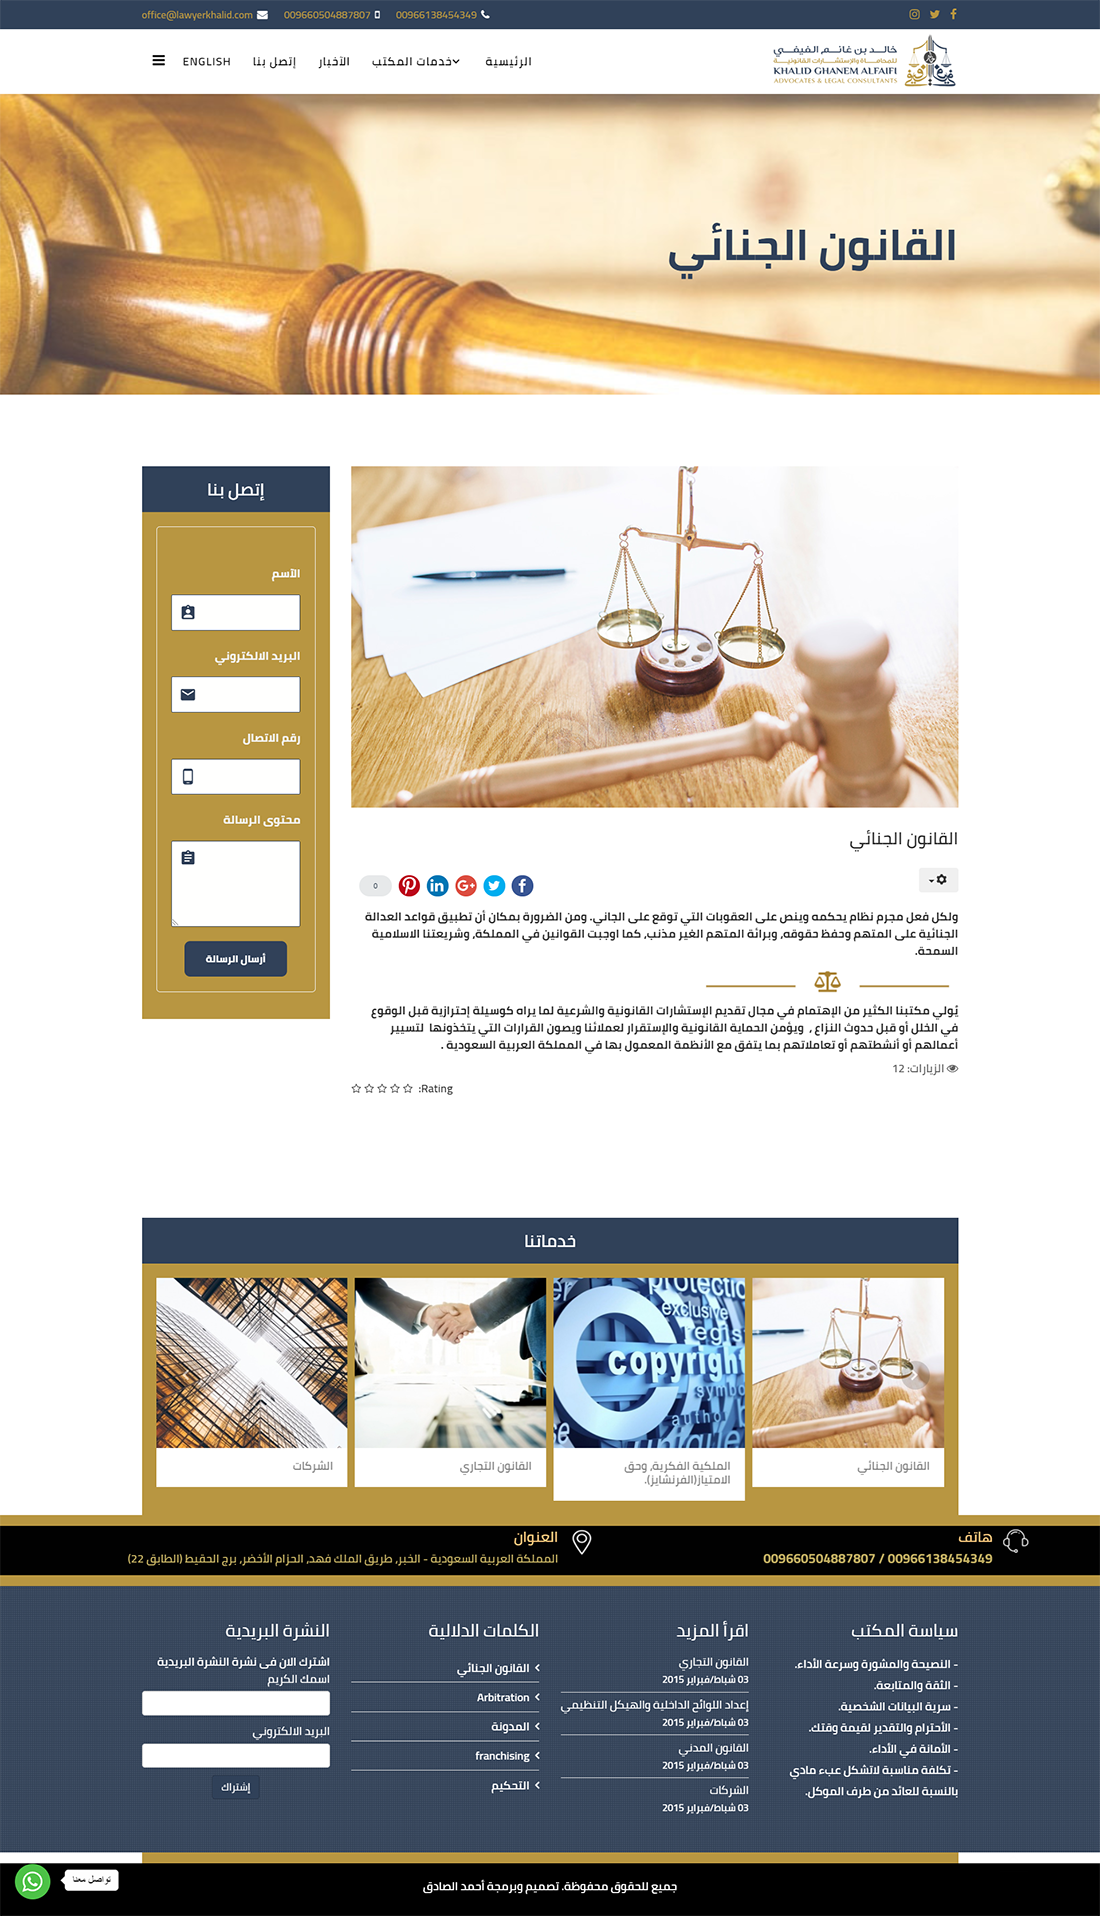 تصميم موقع الكتروني للمحامى خالد الفيفي في المملكة العربية السعودية